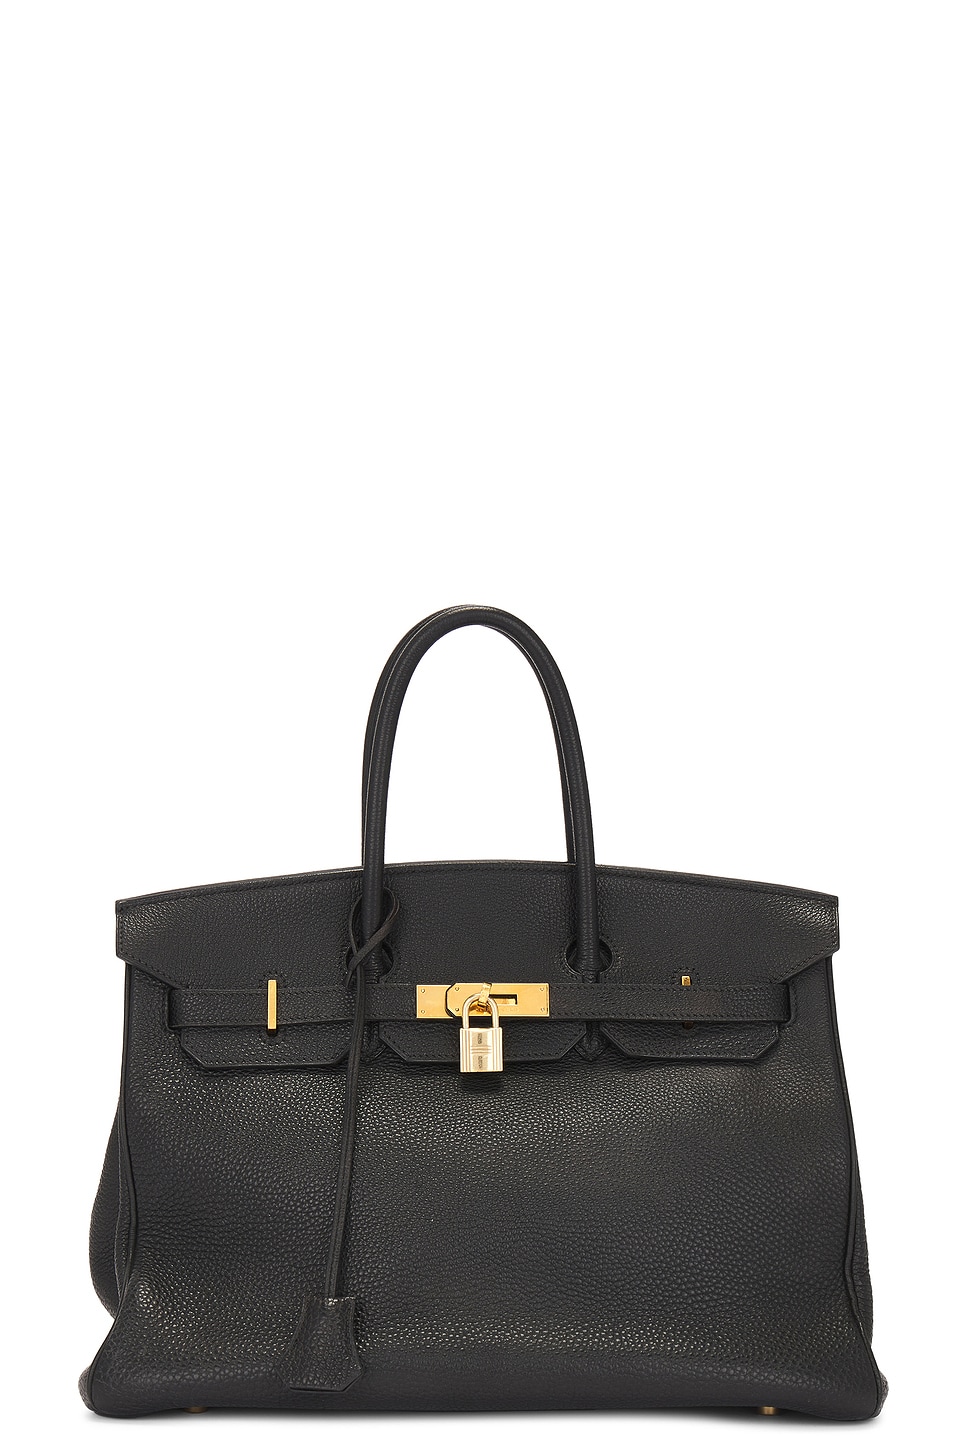 Pre-owned Hermes Togo Birkin 35 Handbag In Black